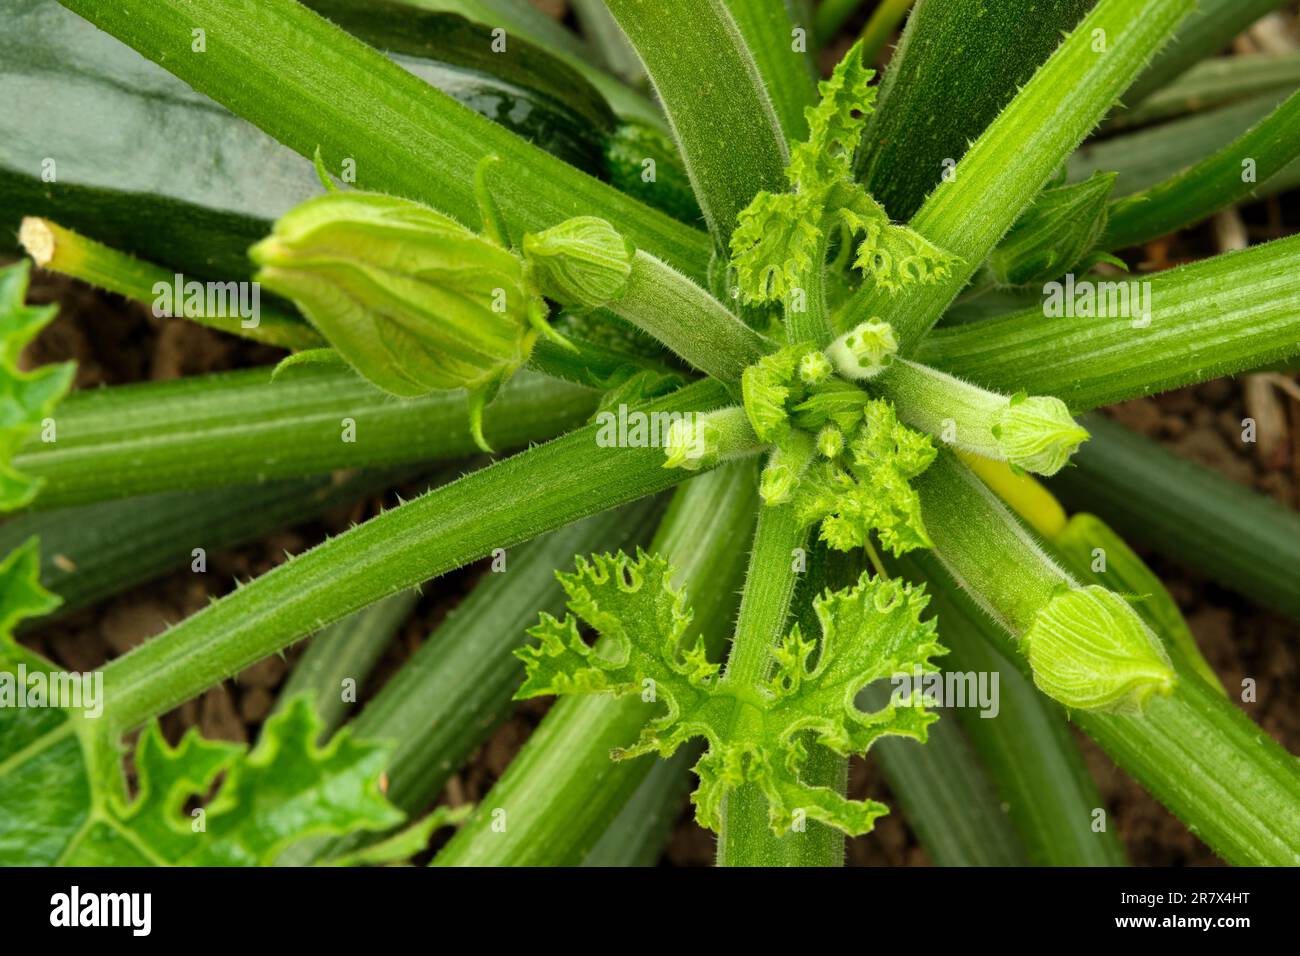 Blick auf die wachsende Krone der Zucchini-Pflanze. Sowohl männliche als auch weibliche Blütenknospen sind sichtbar, und es bilden sich neue Blätter. Stockfoto